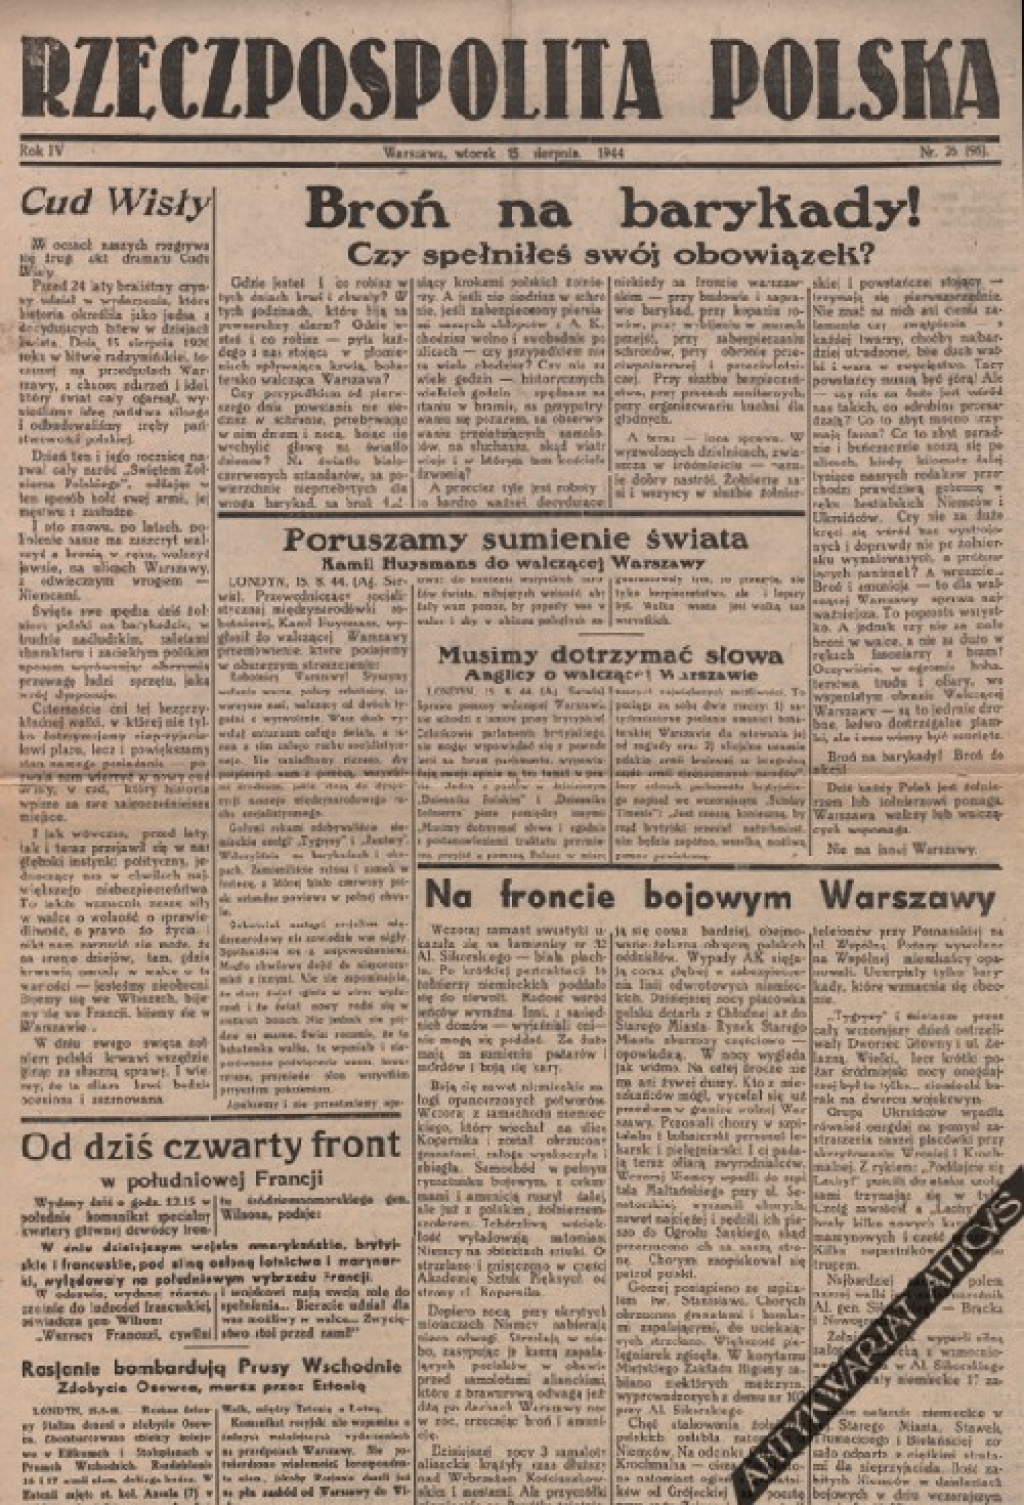 [prasa konspiracyjna z okresu Powstania Warszawskiego] Rzeczpospolita Polska, Warszawa, poniedziałek 15 sierpnia 1944